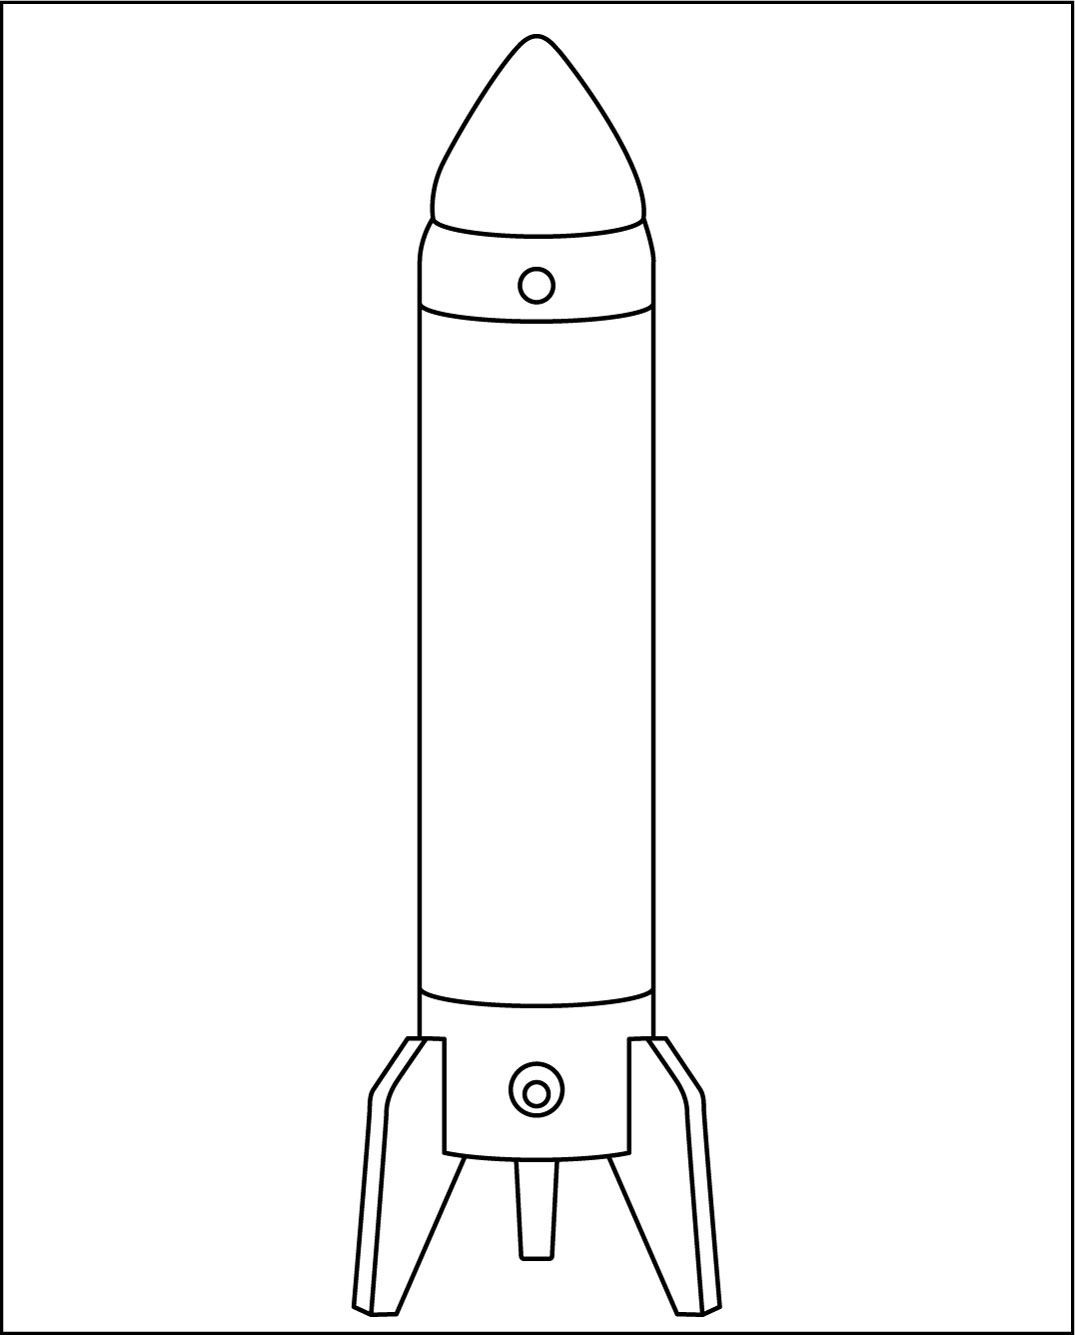 高齢者レク素材 ロケット型ランプ モノクロ イラスト 介護レク広場 レク素材やレクネタ 企画書 の無料ダウンロード